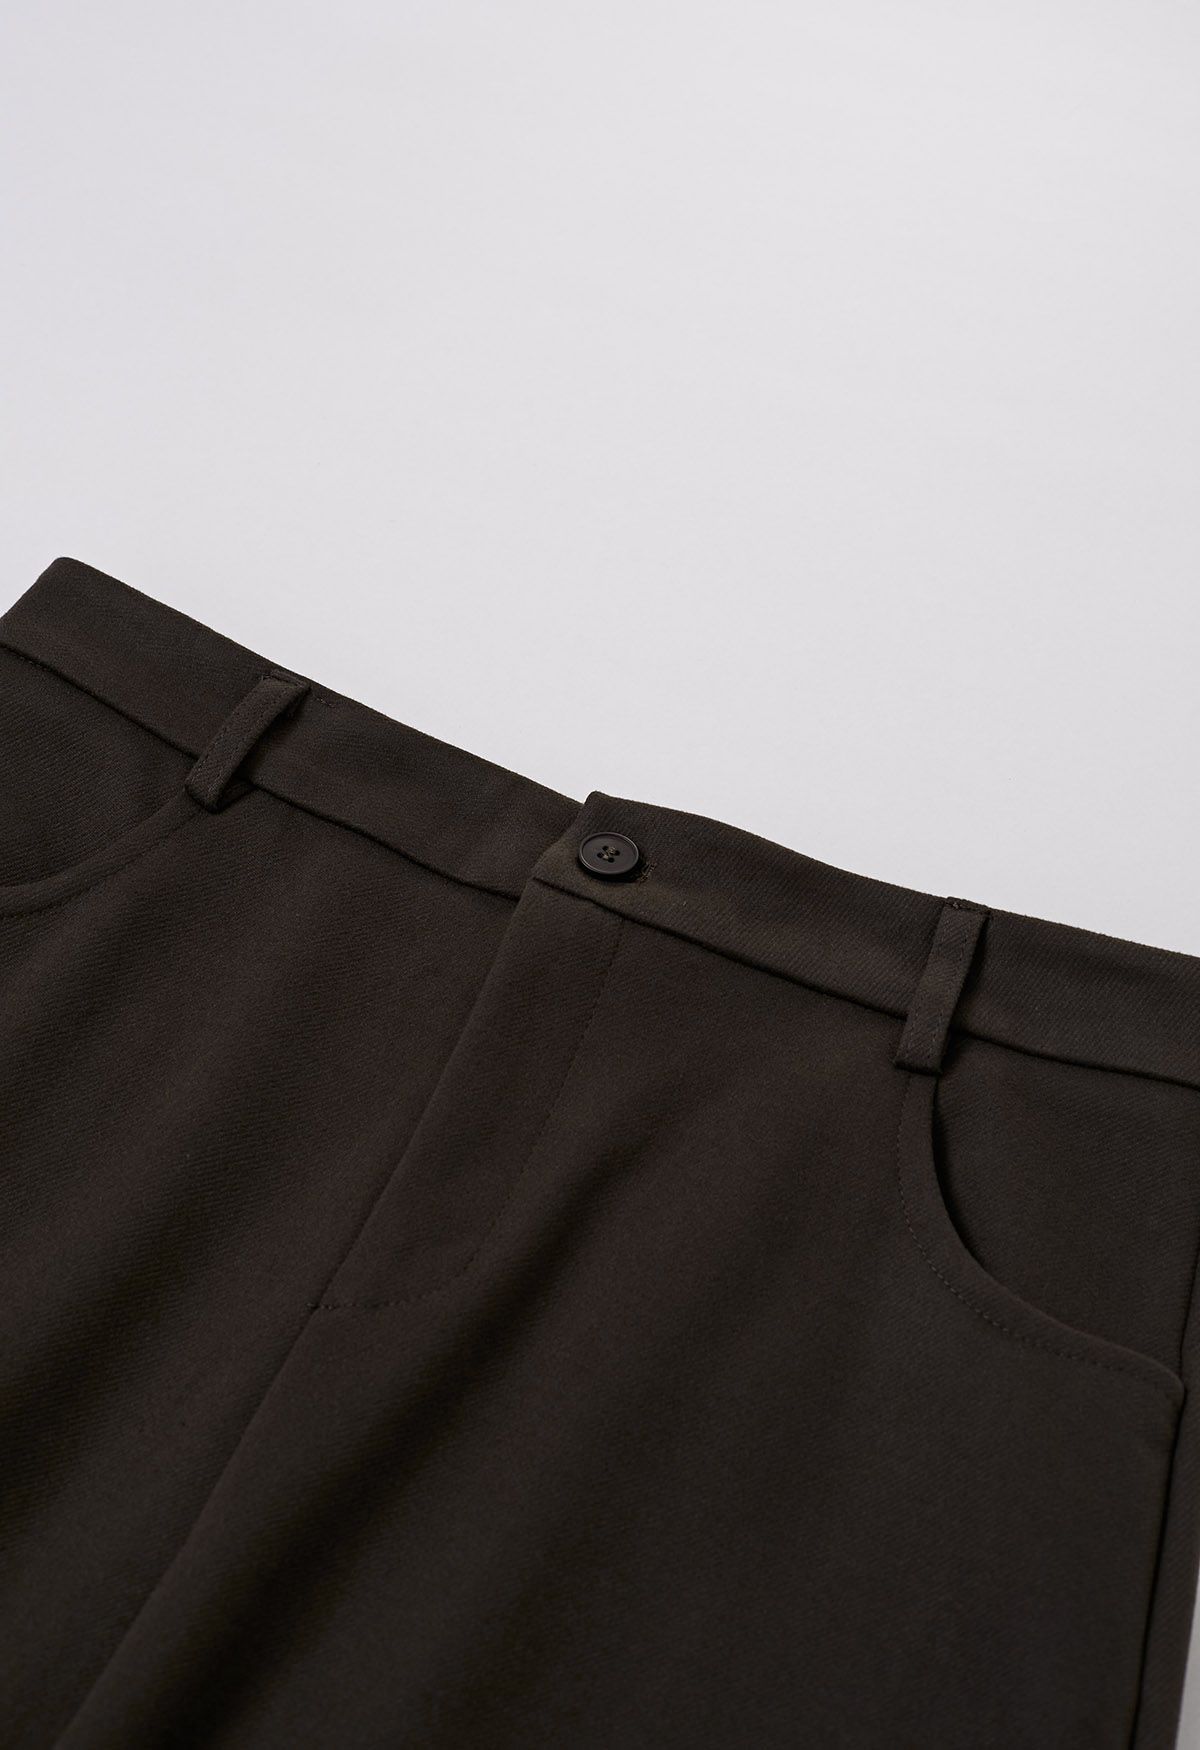 Falda larga con cinturón y abertura en la espalda en color caqui